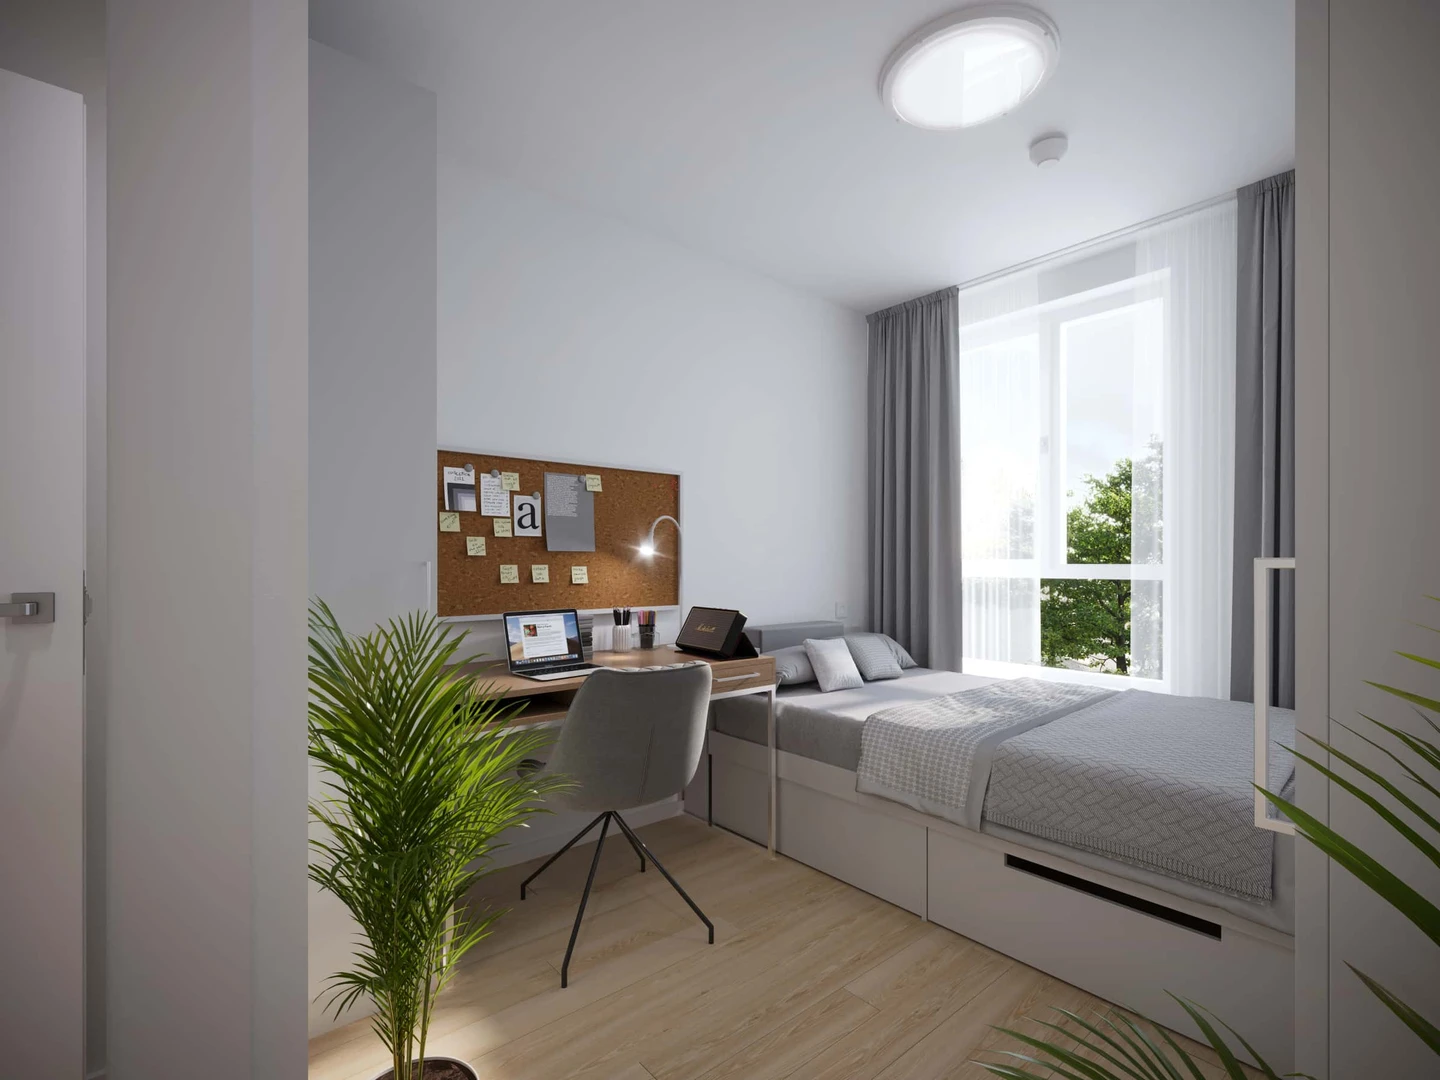 Alquiler de habitaciones por meses en krakow